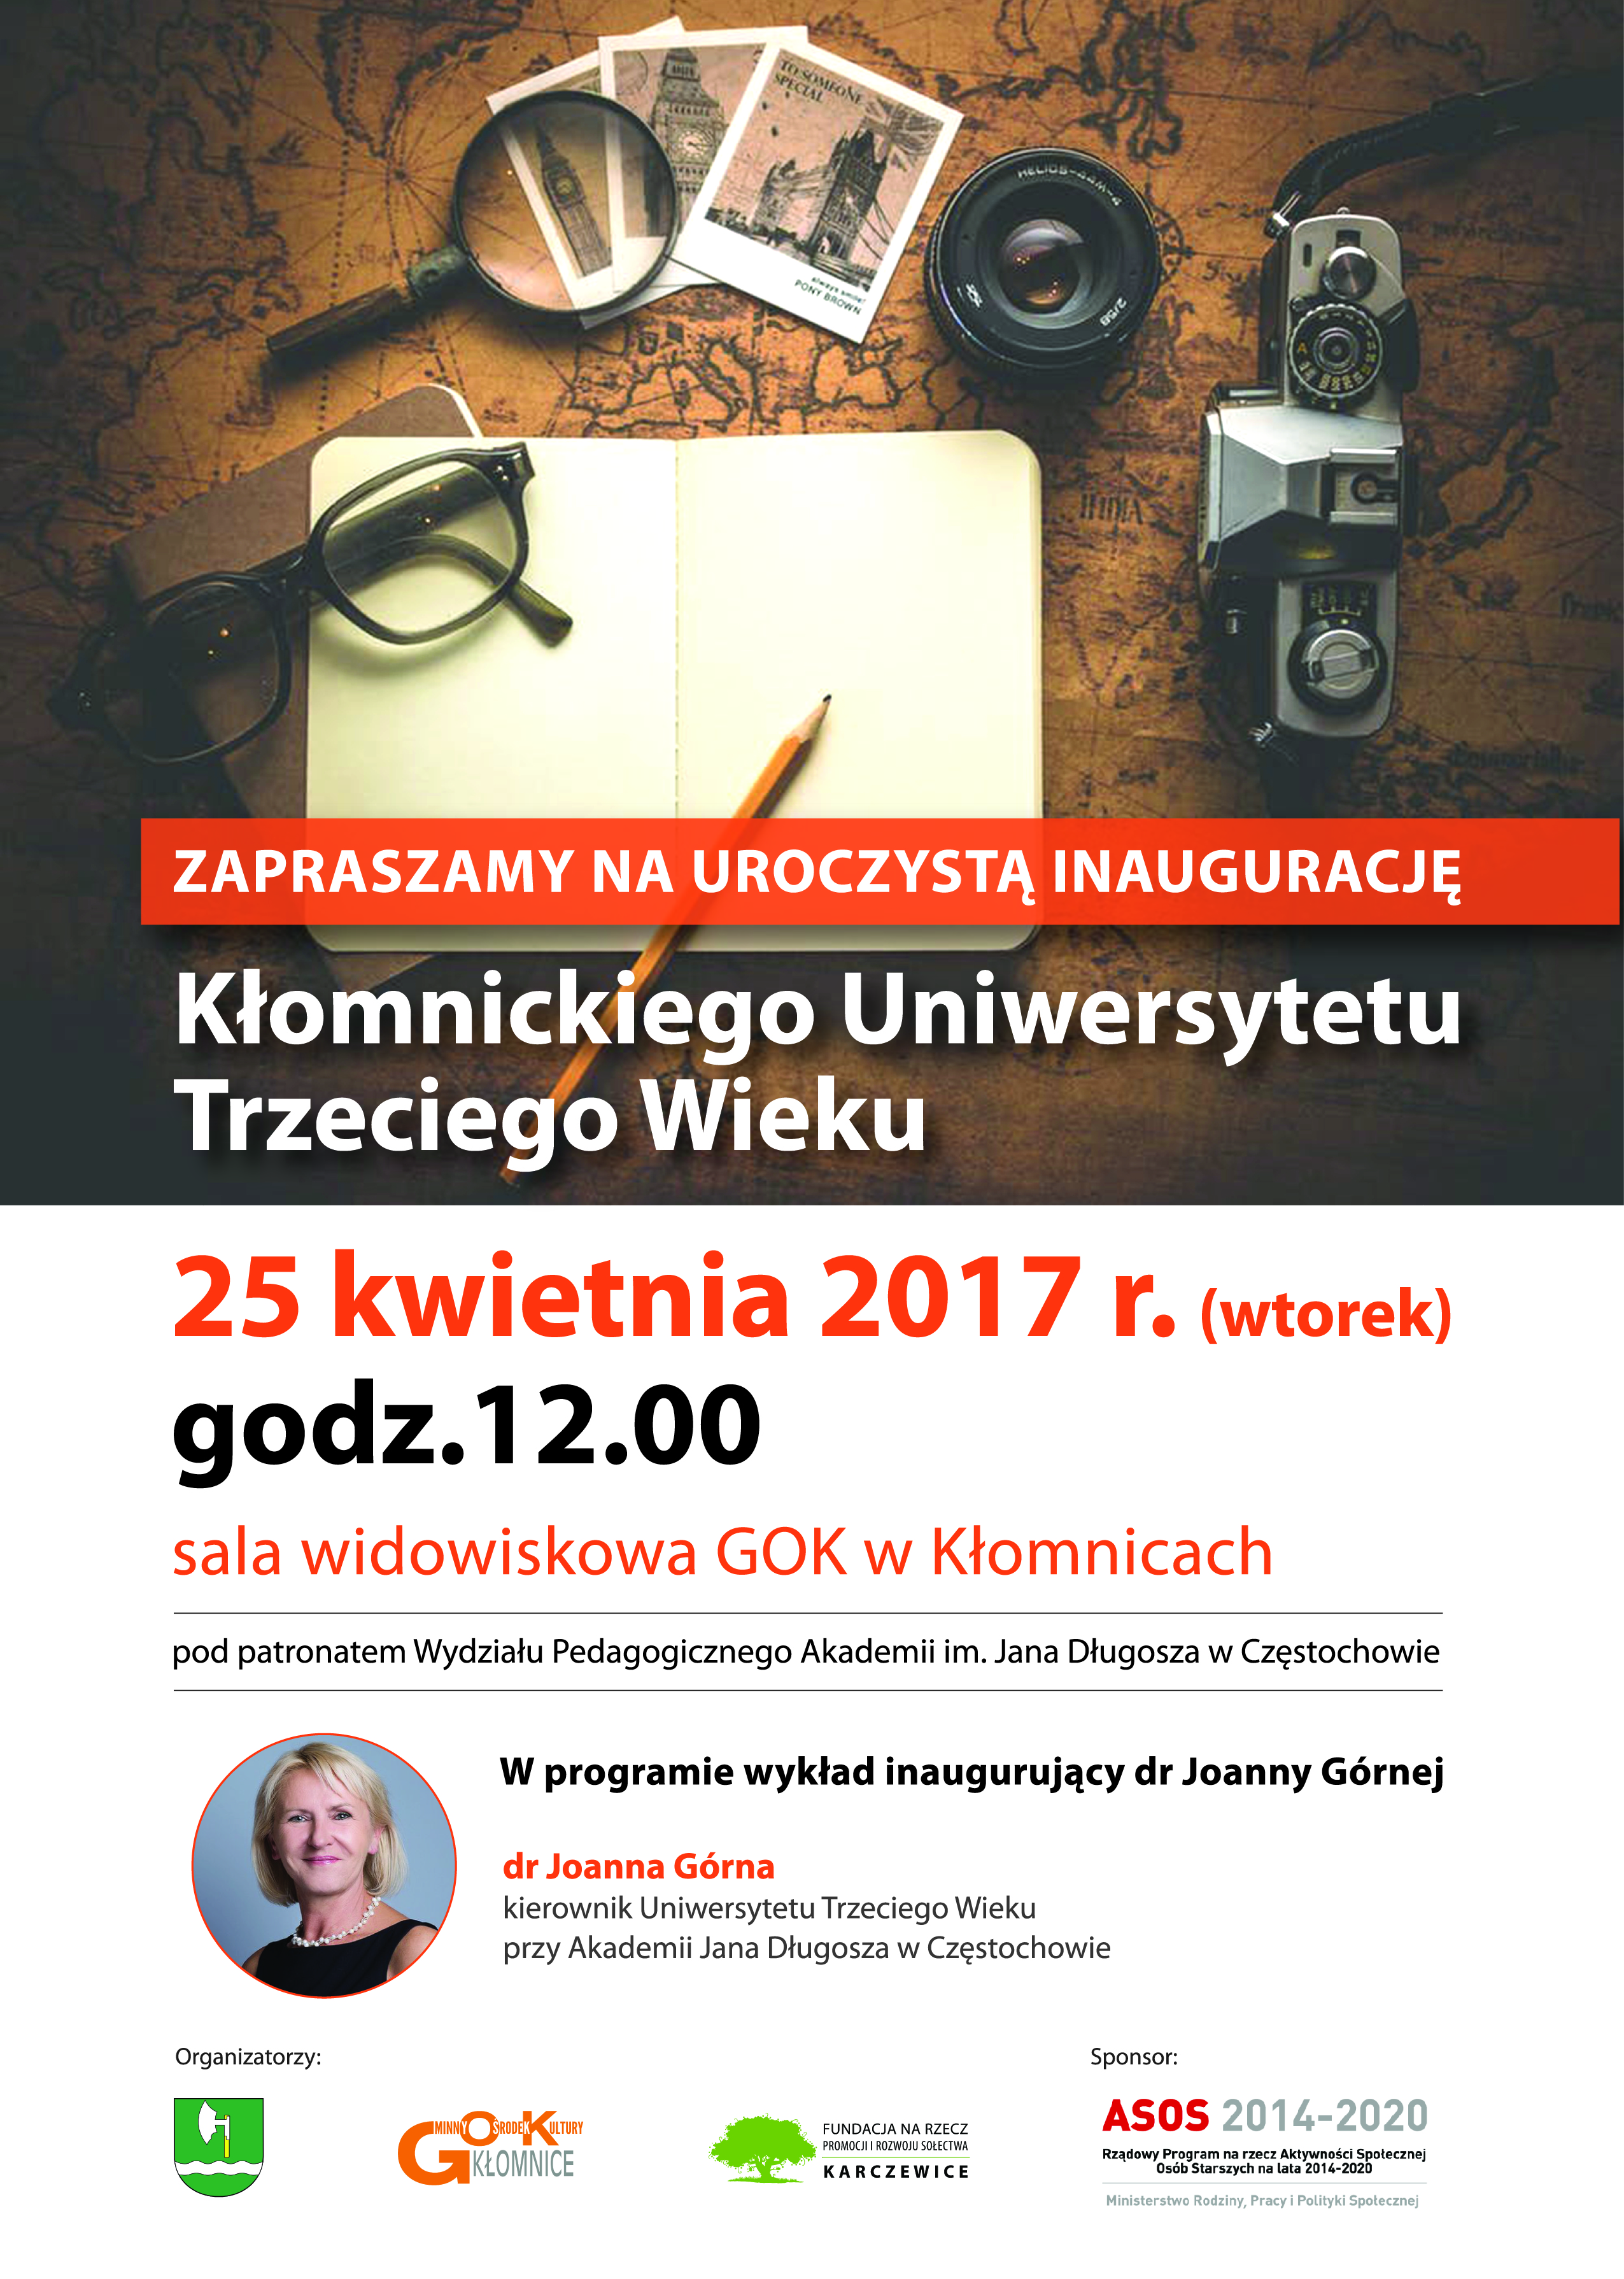 Inauguracja Uniwersytetu Trzeciego Wieku w Kłomnicach